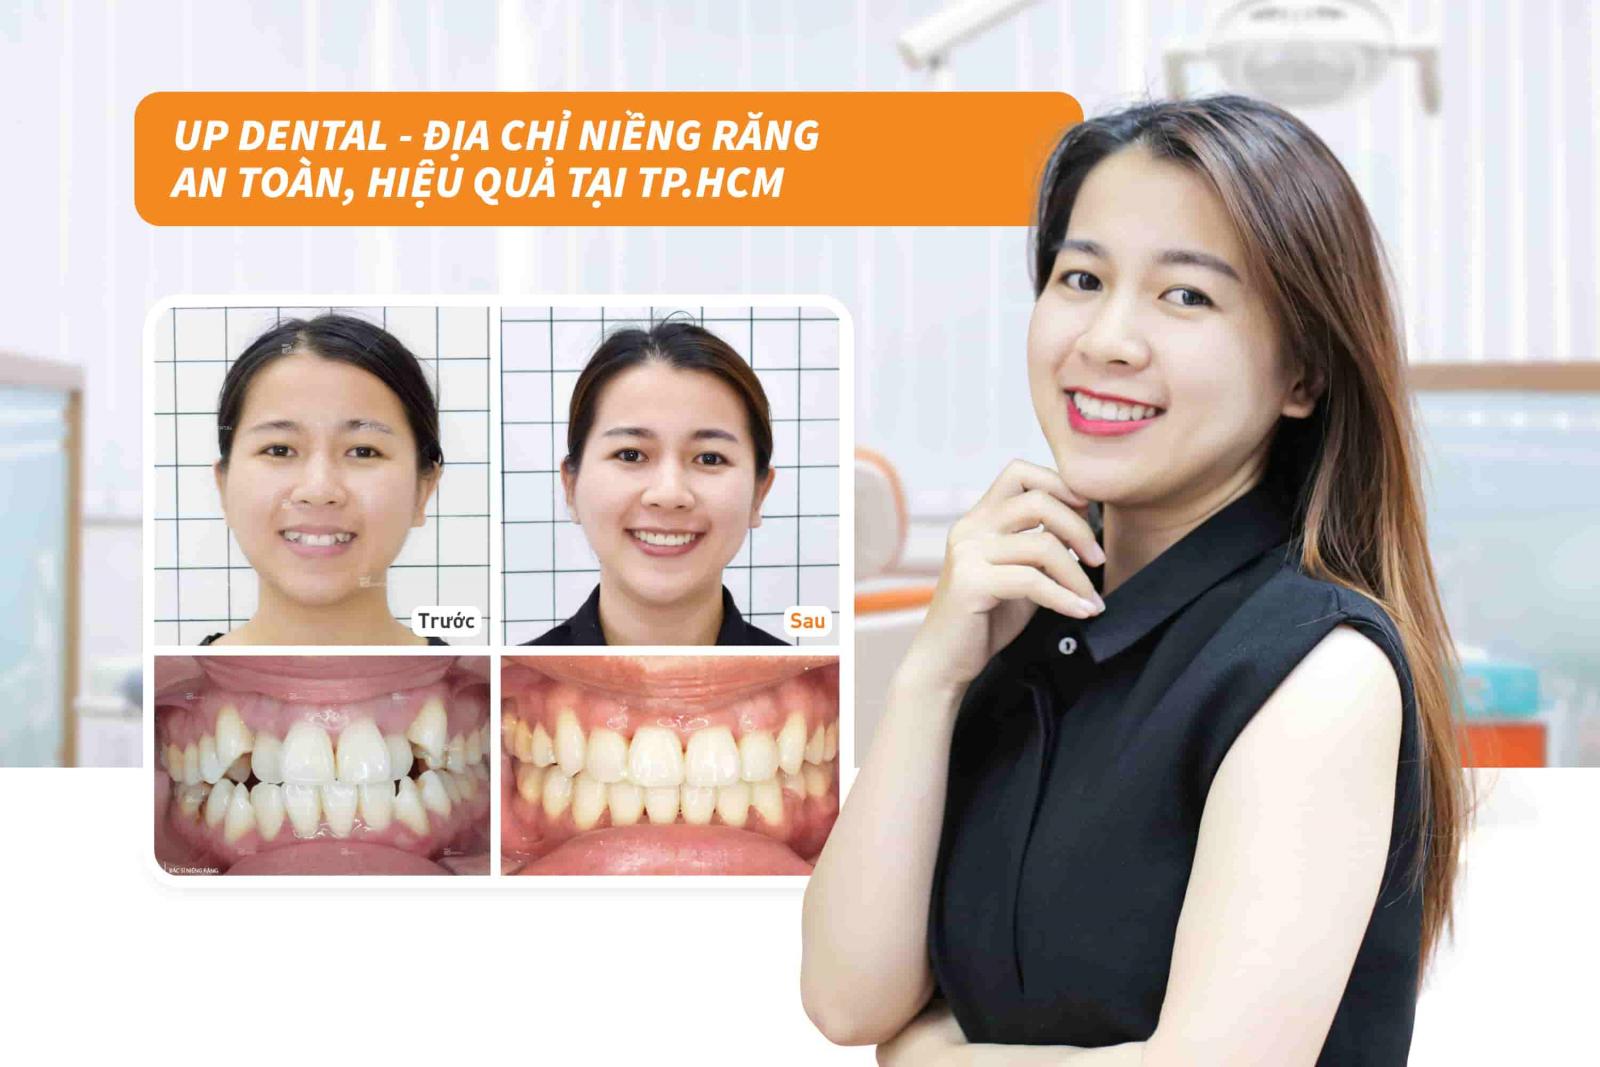 Up Dental - Địa chỉ niềng răng an toàn, hiệu quả tại TP.HCM 